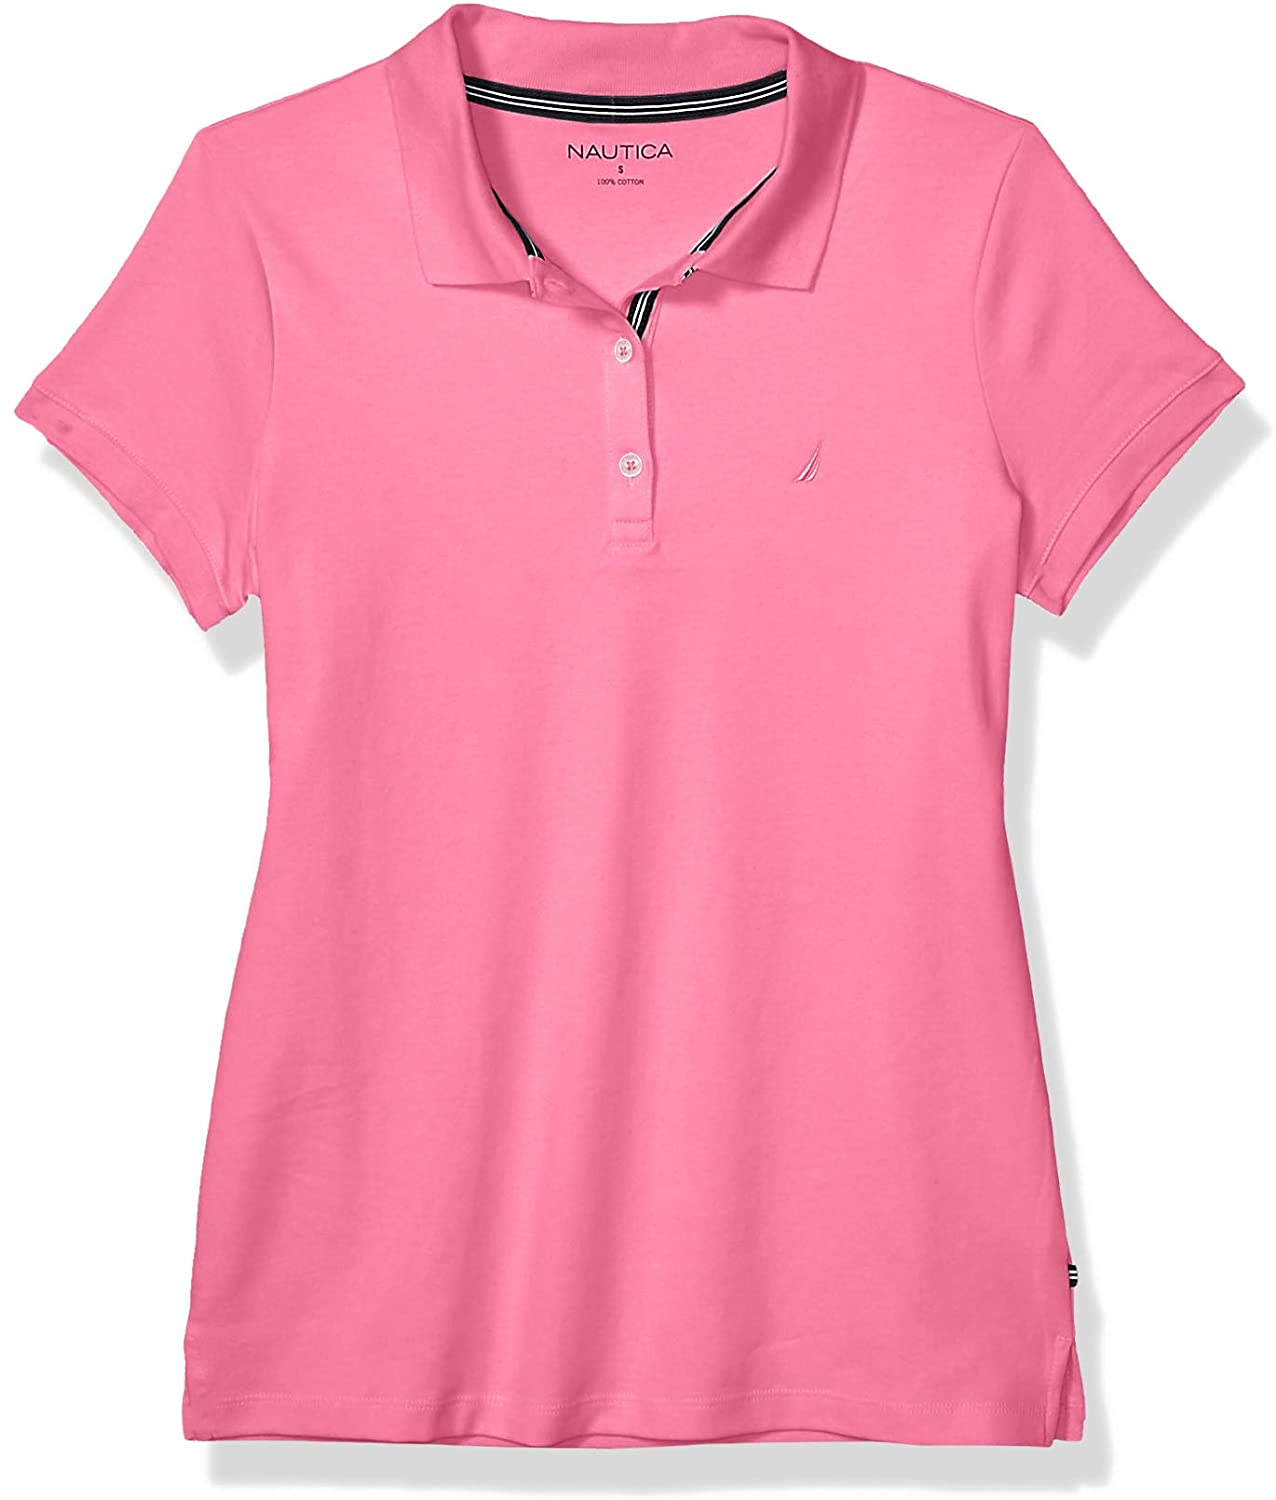 Nautica 3-button Short Sleeve Breathable 100% Cotton Polo Shirt Polo Mujer 